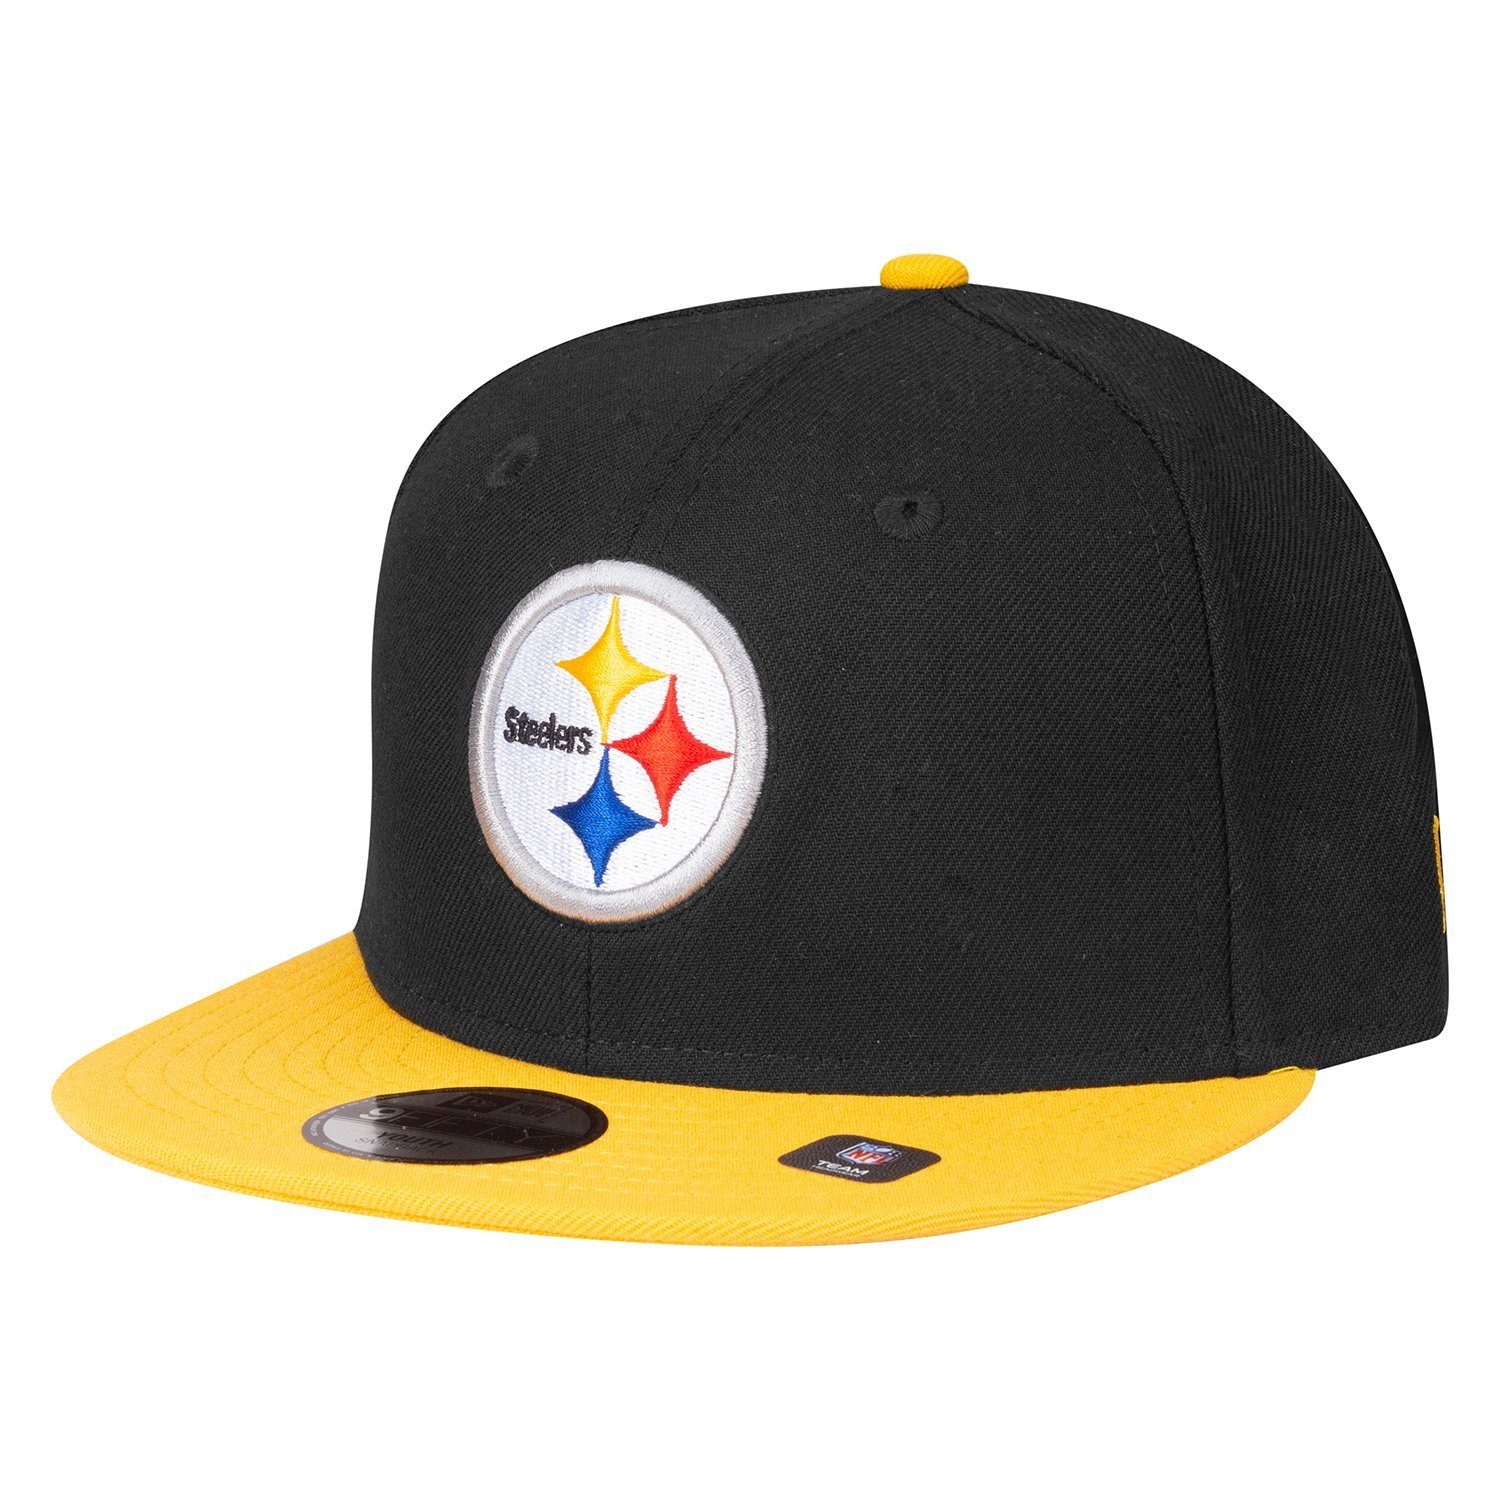 New Era Baseball Cap 9Fifty Pittsburgh Steelers